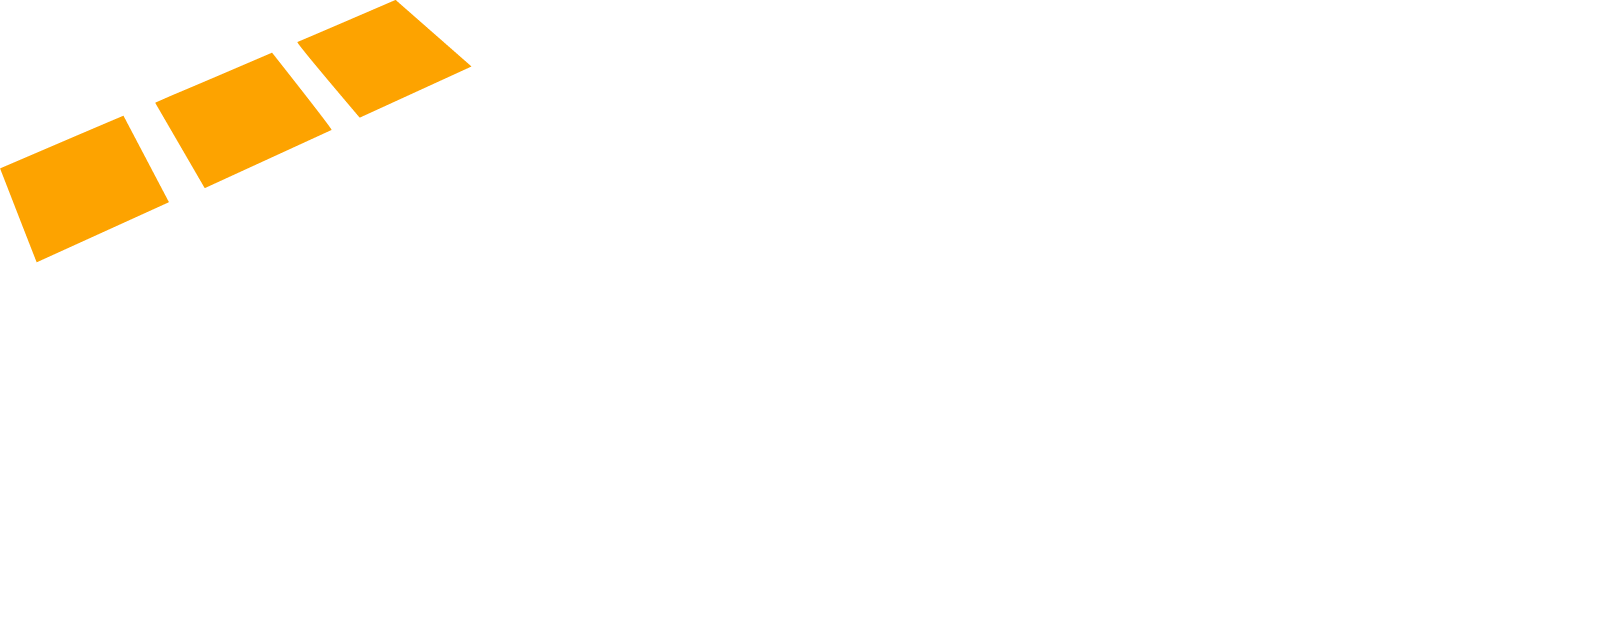 Infotech consultancy